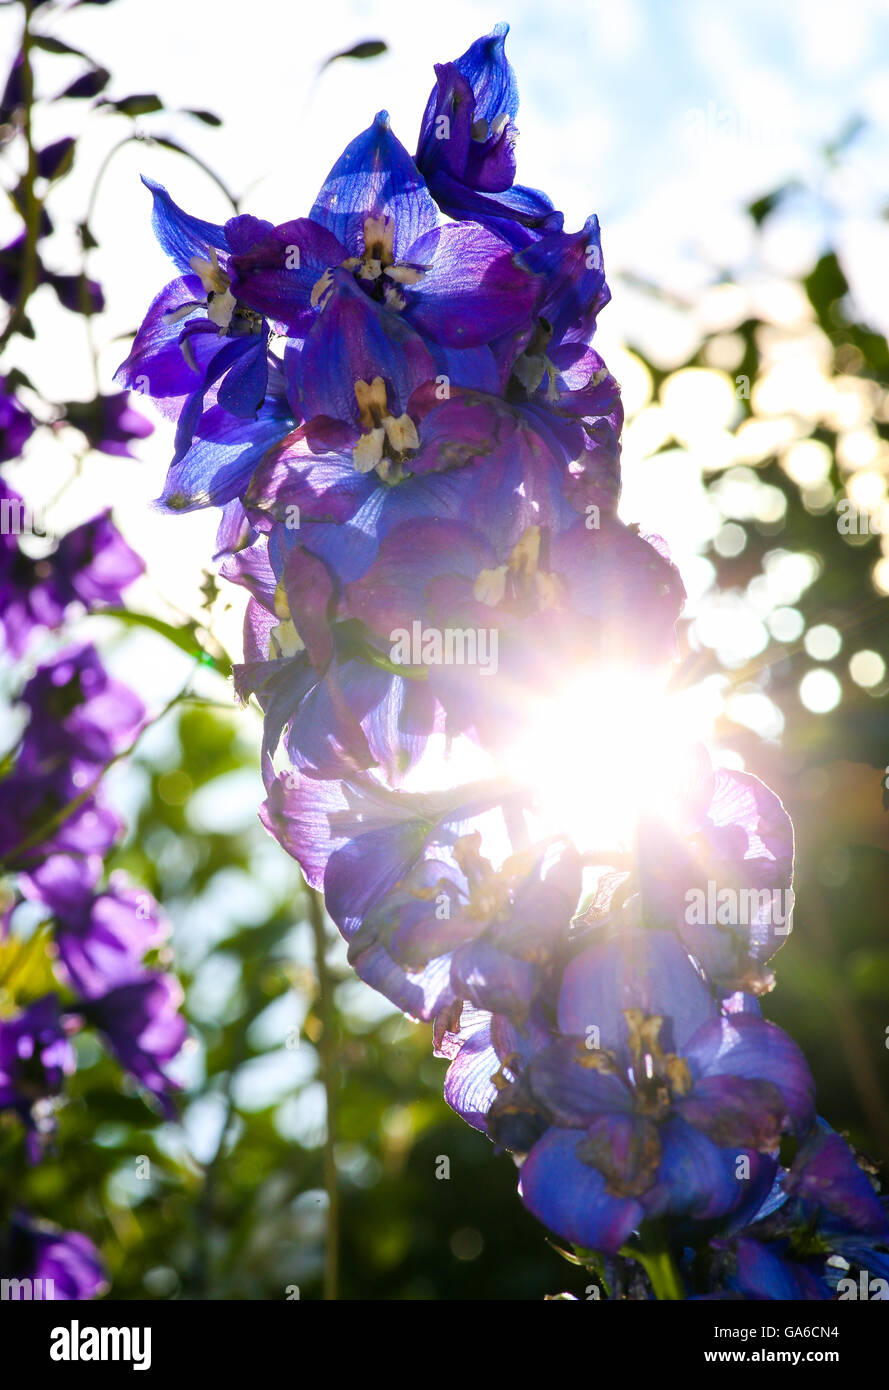 Sparkle rayos de sol empujar a través de Delphinium Azul flores en el jardín Foto de stock